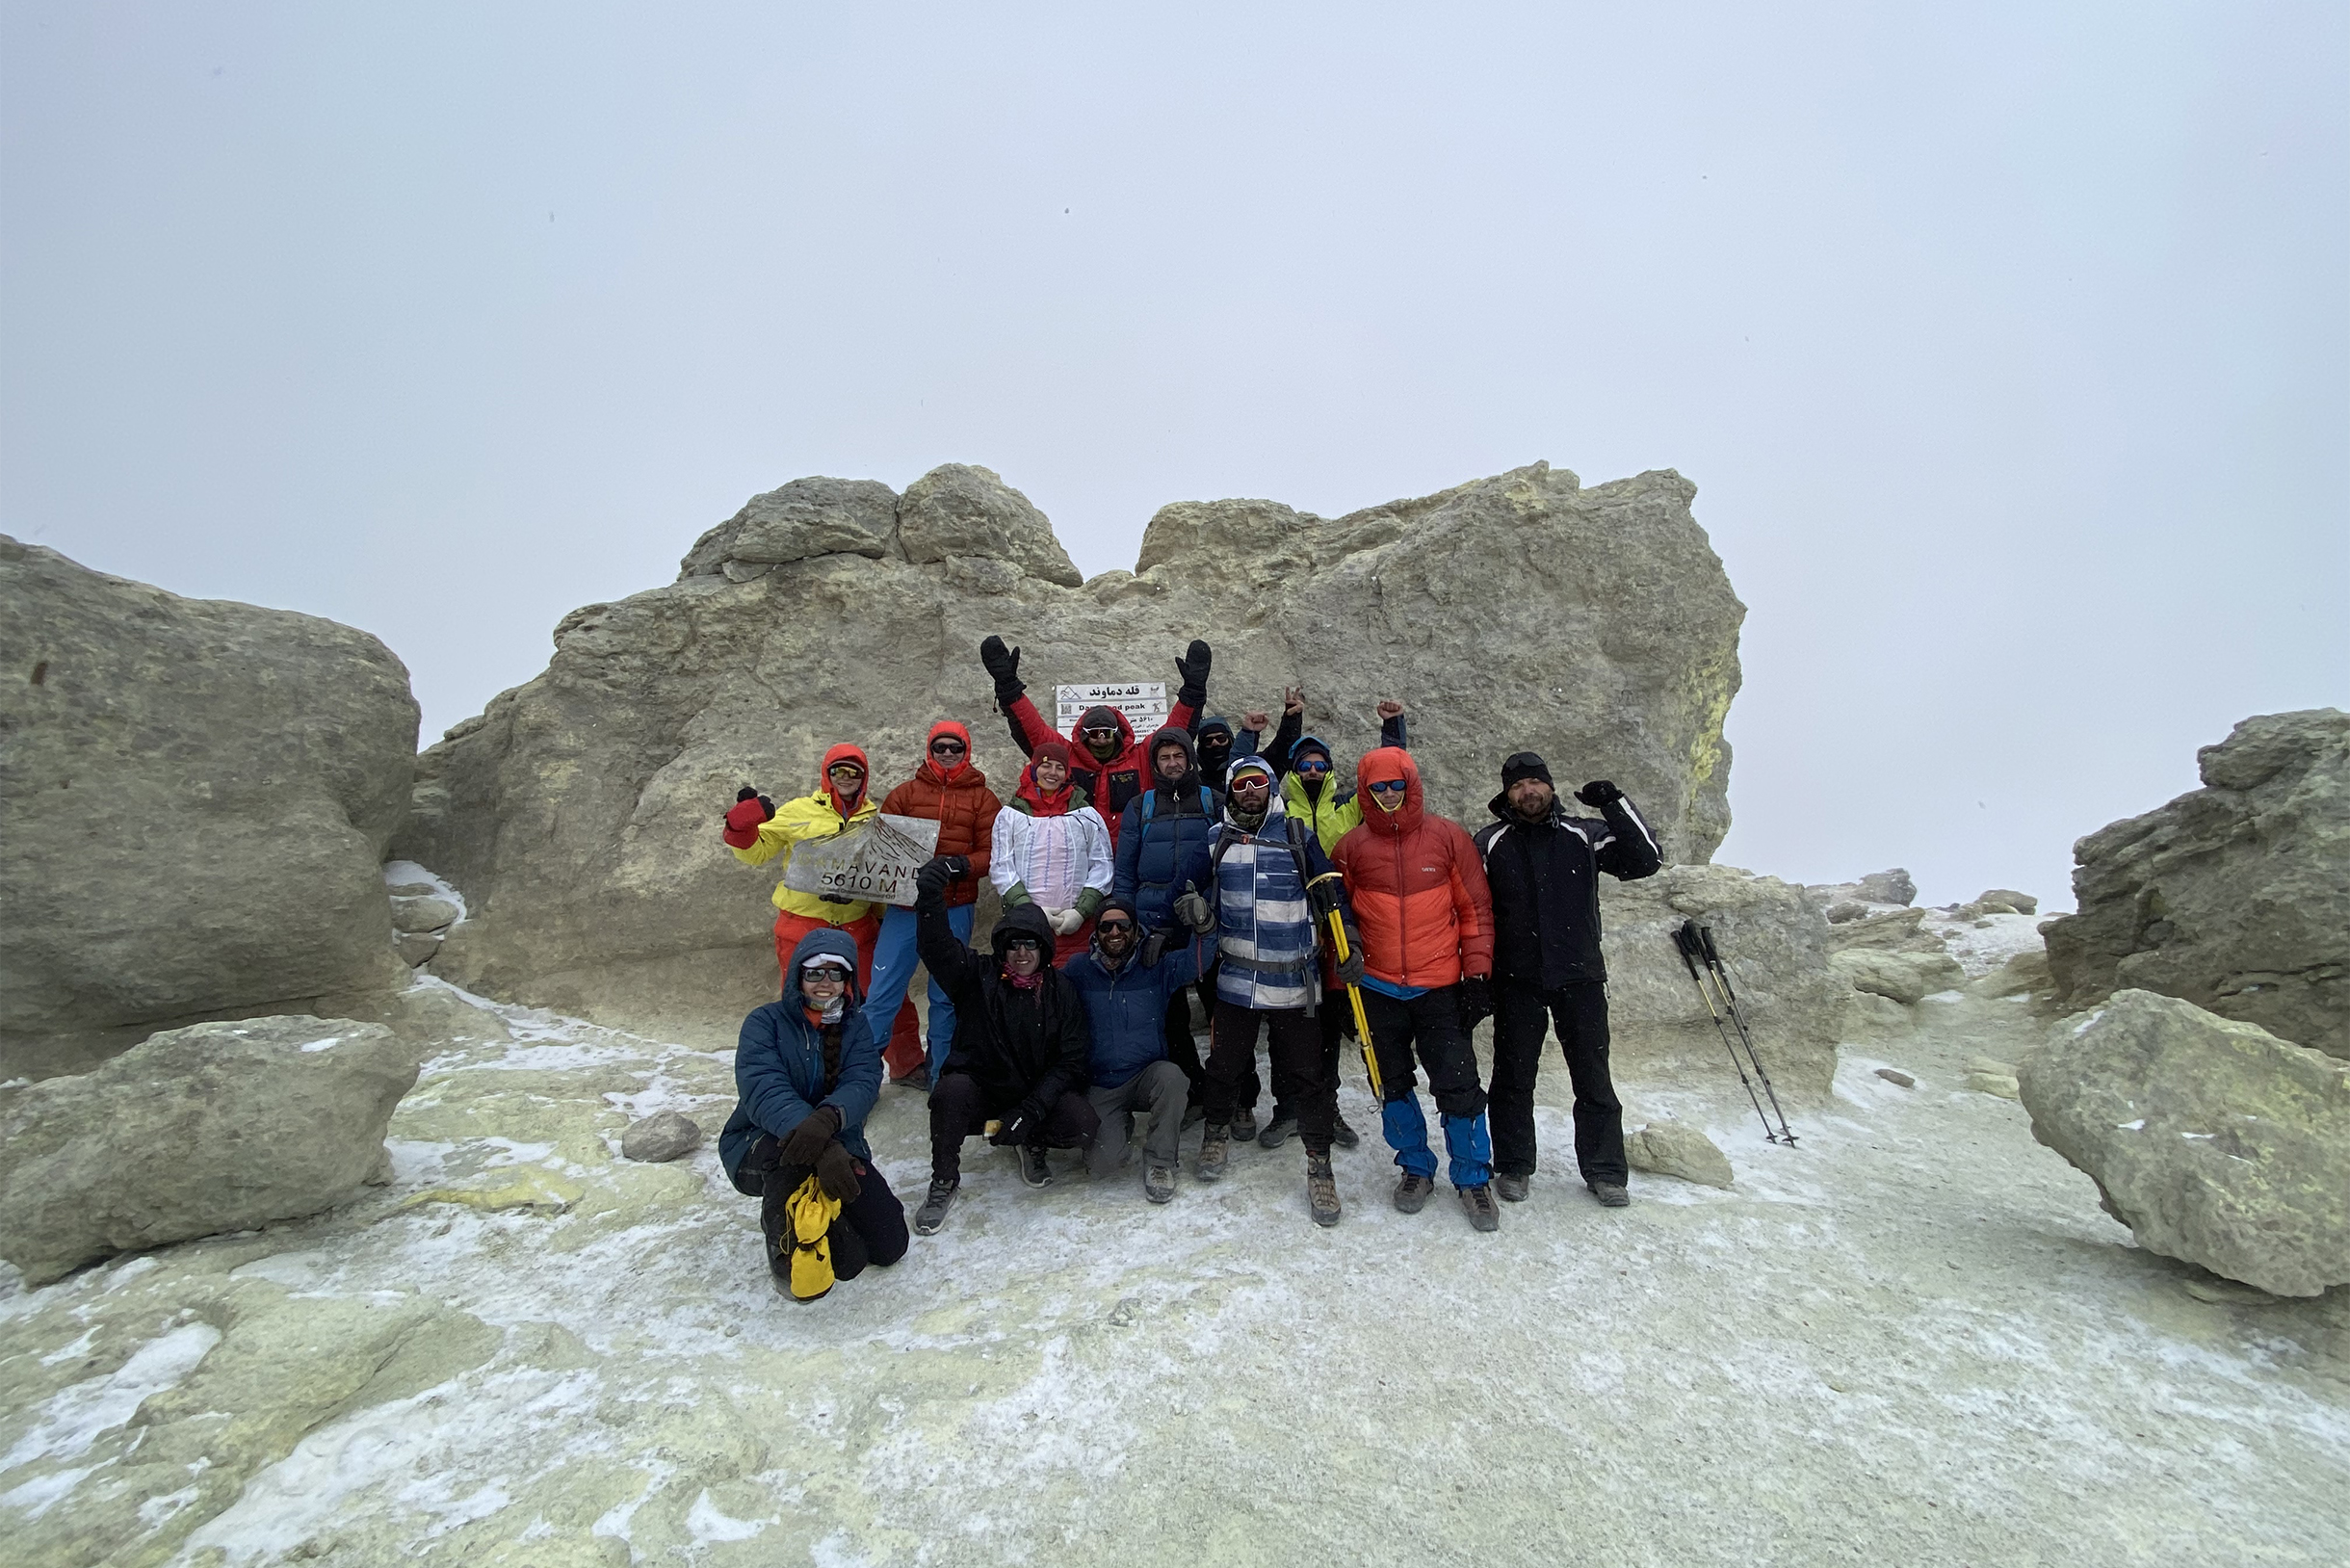 Вершина Демавенда 5611 метров и вся наша группа в полном составе. Слева участница держит табличку с названием вулкана. Когда мы делали фото, набежало облако, поэтому эпичного вида на просторы мы не получили